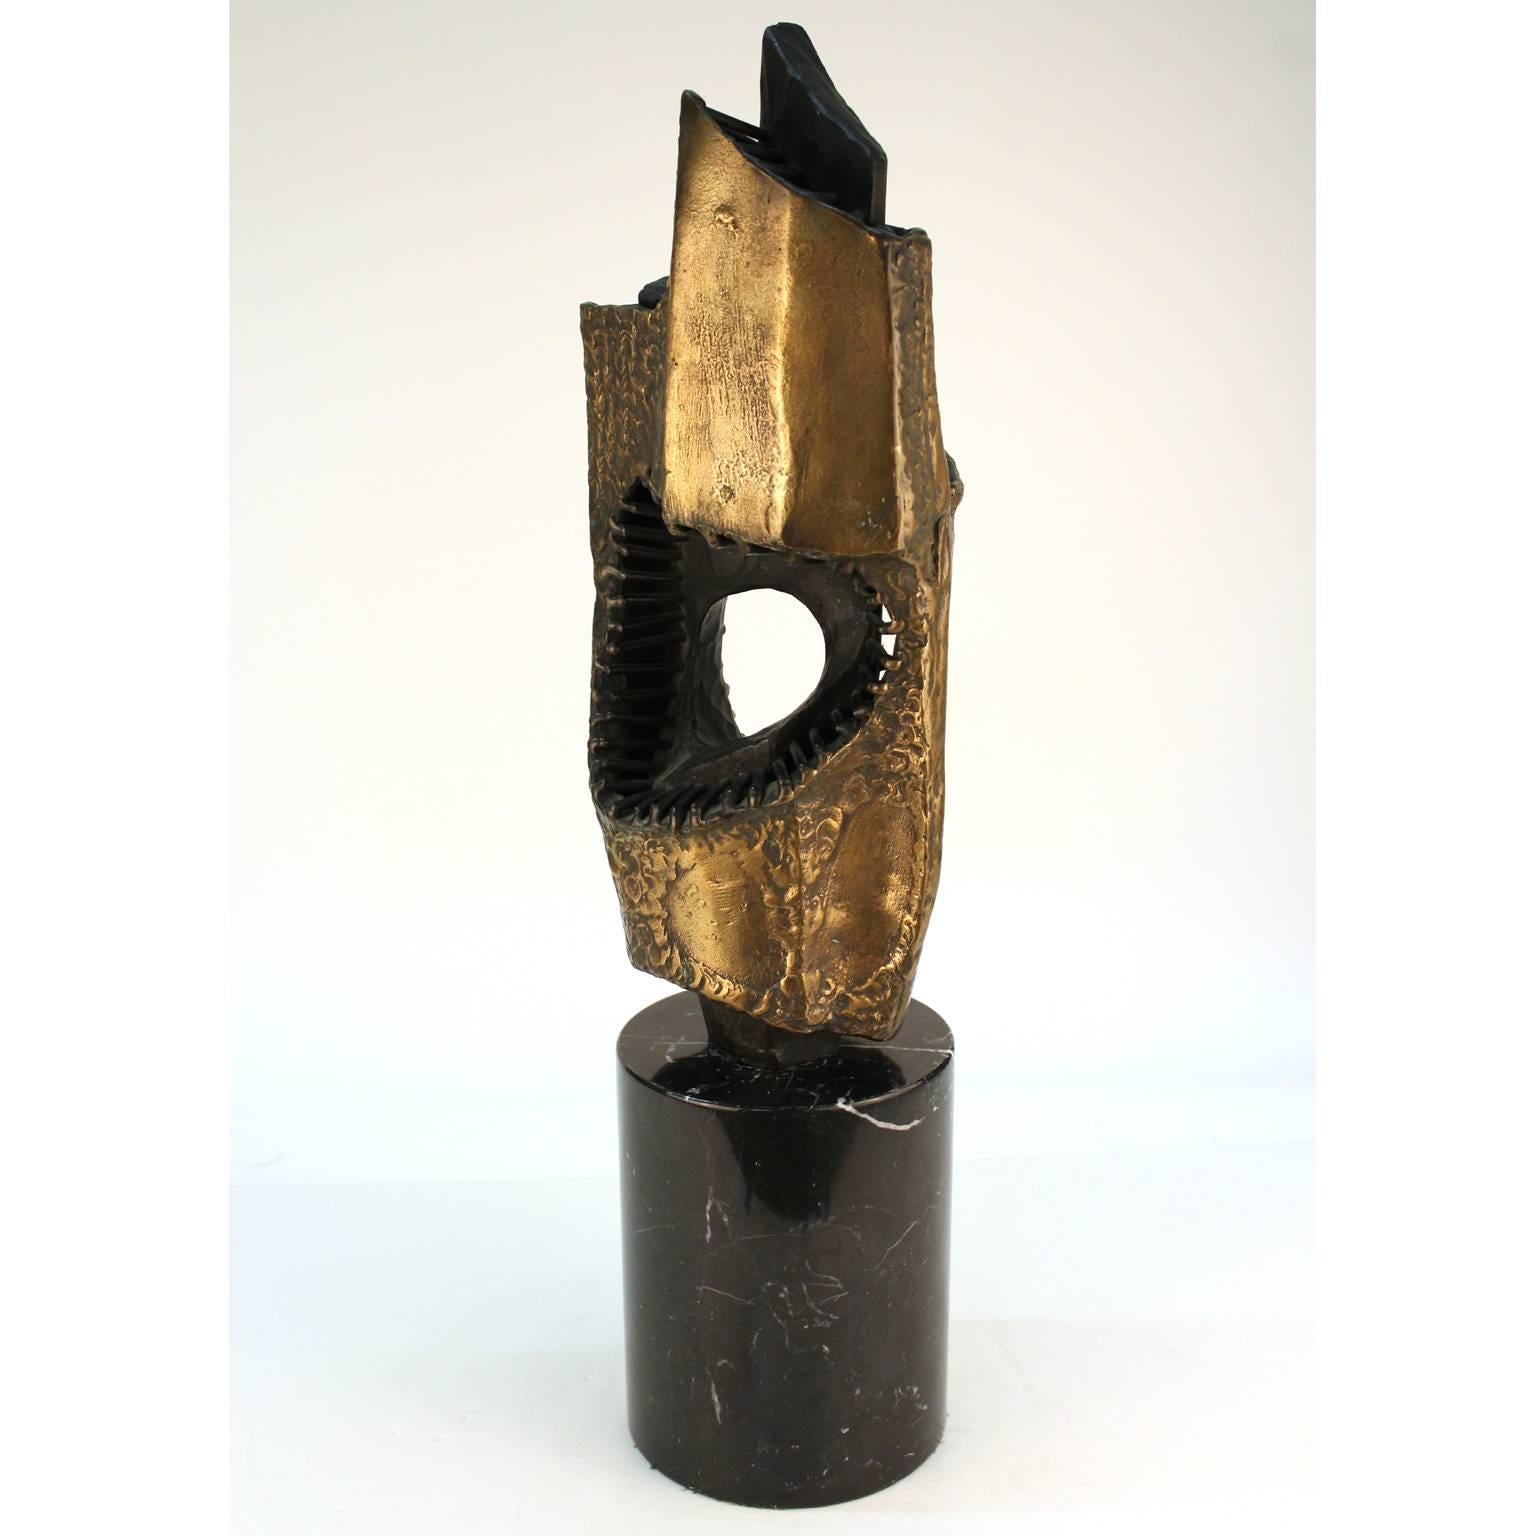 Sculpture abstraite brutaliste en bronze soudé, partiellement patiné à l'or, réalisée par Vandevoorde dans les années 1960-1970. Signé. Bon état général. La base en bois d'origine comporte une plaque avec le titre 